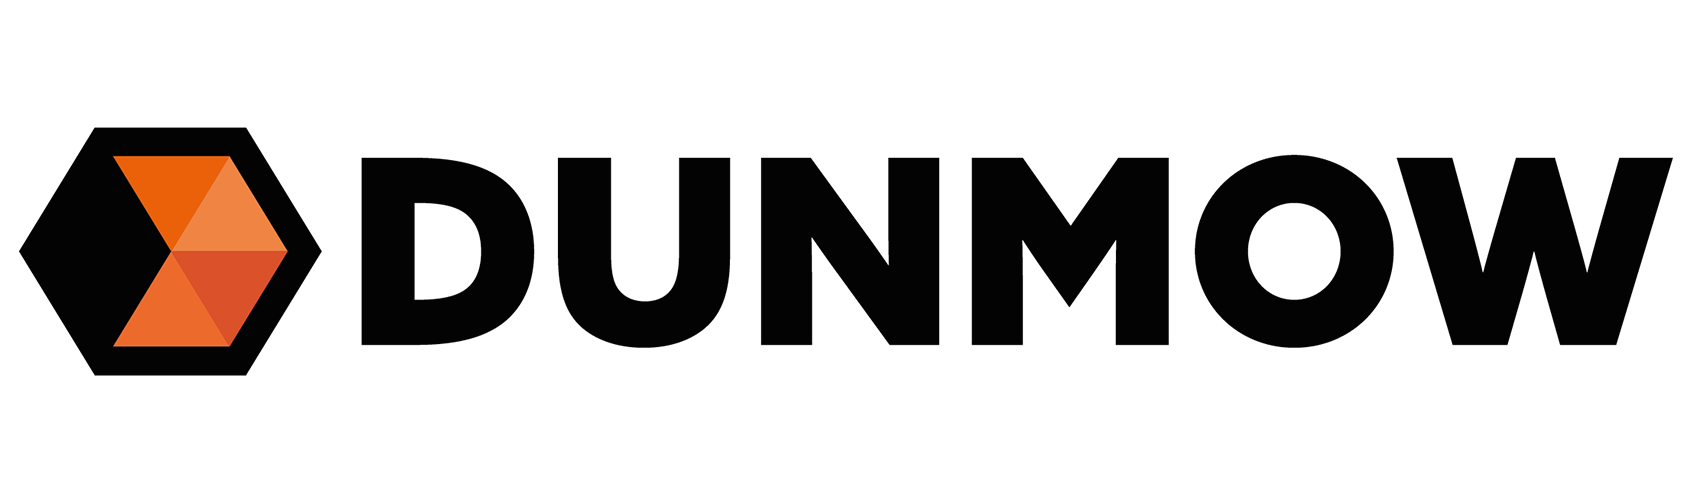 Dunow Logo 1706x256